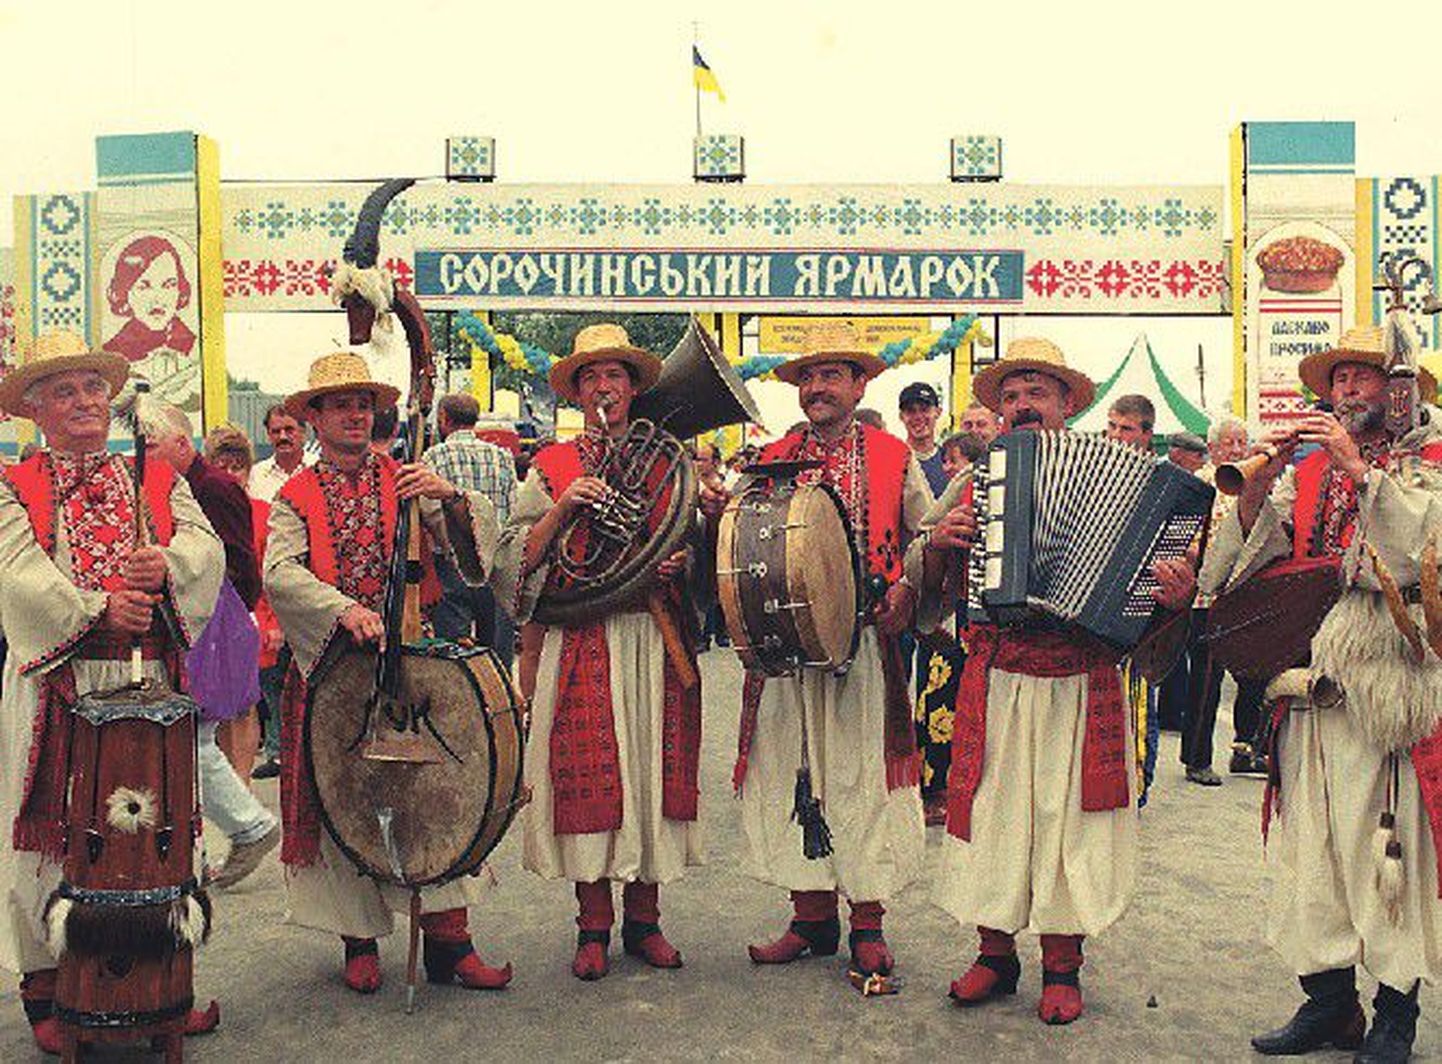 Эстония —  это единственная страна, в которой за пределами Украины проводится Сорочинская ярмарка. На фото: национальная ярмарка в Полтавской области, в селе Большие Сорочинцы ежегодно привлекает тысячи гостей как с разных уголков Украины, так и из других стран.